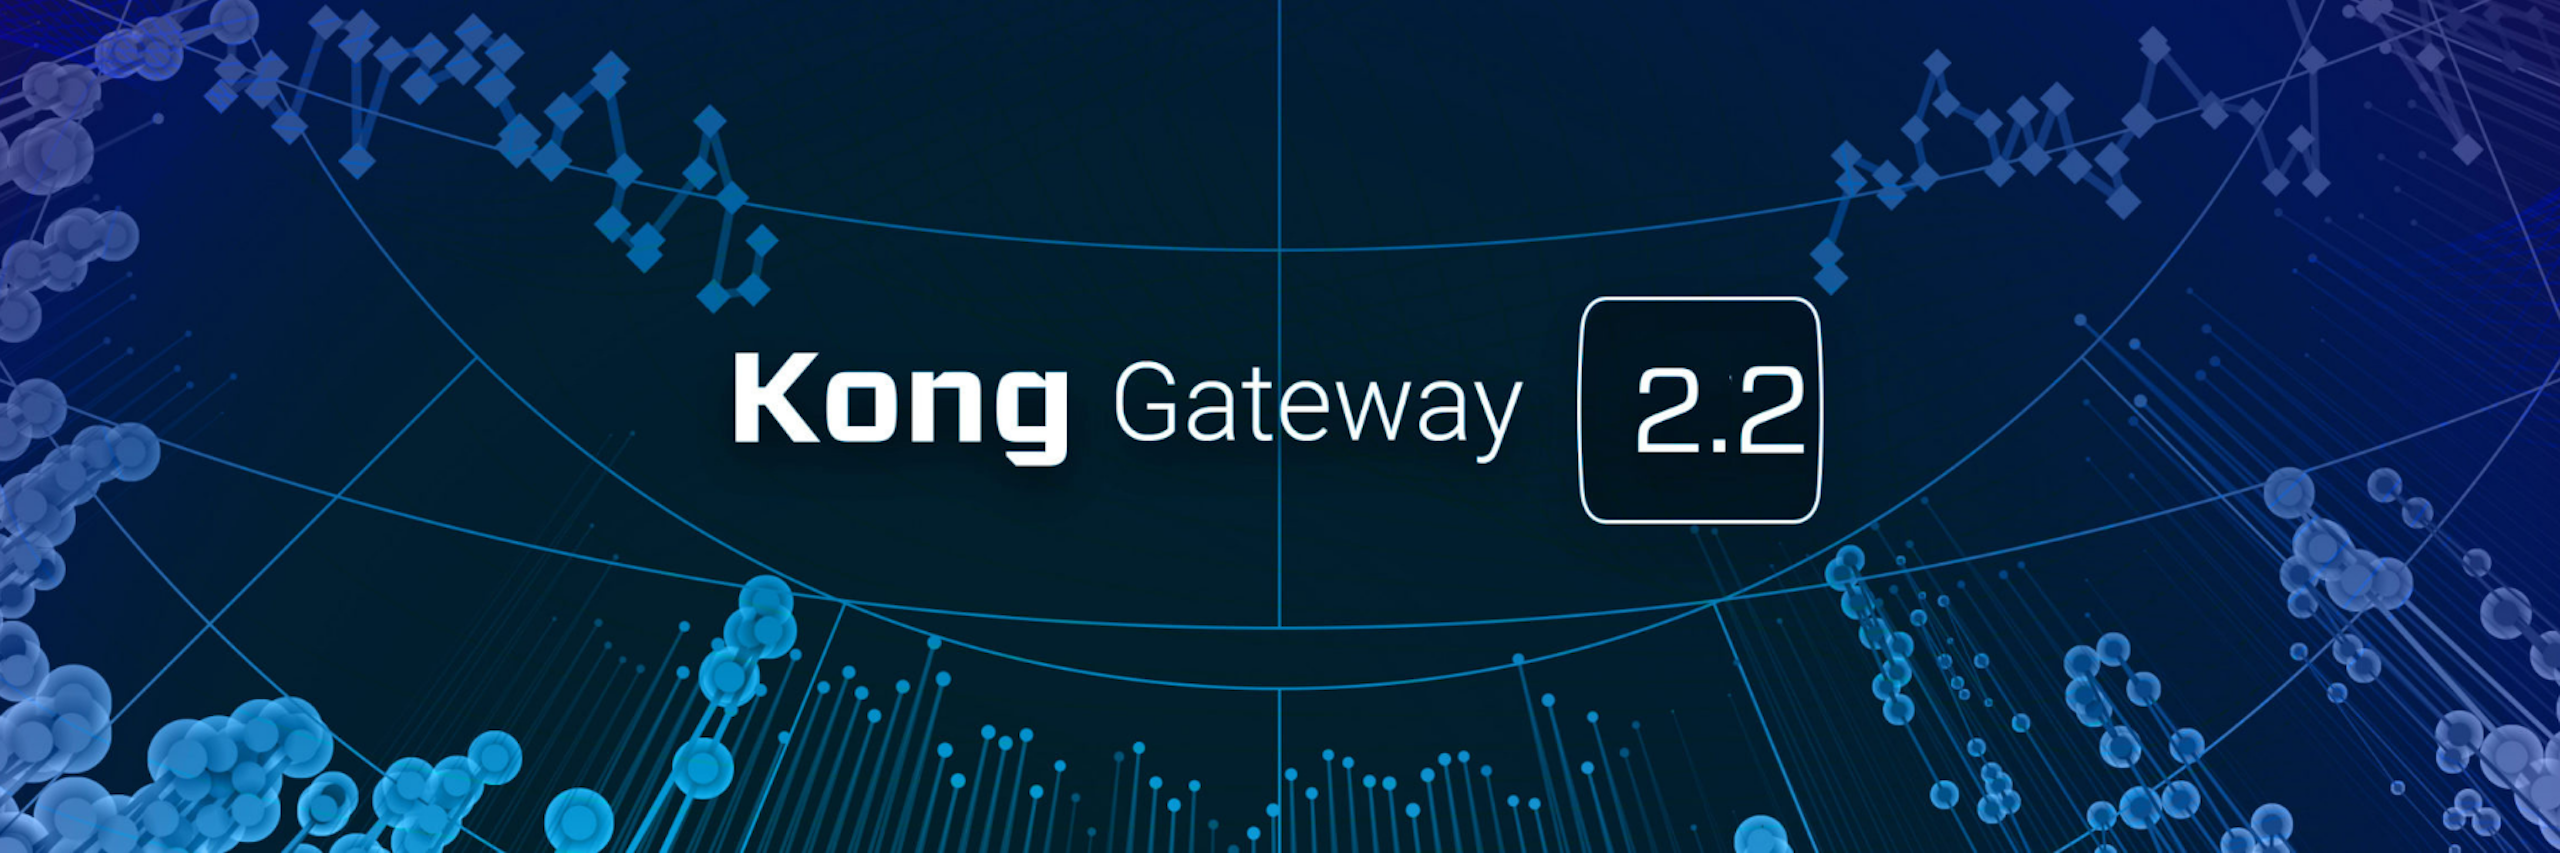 Kong Gateway 2.2 released!